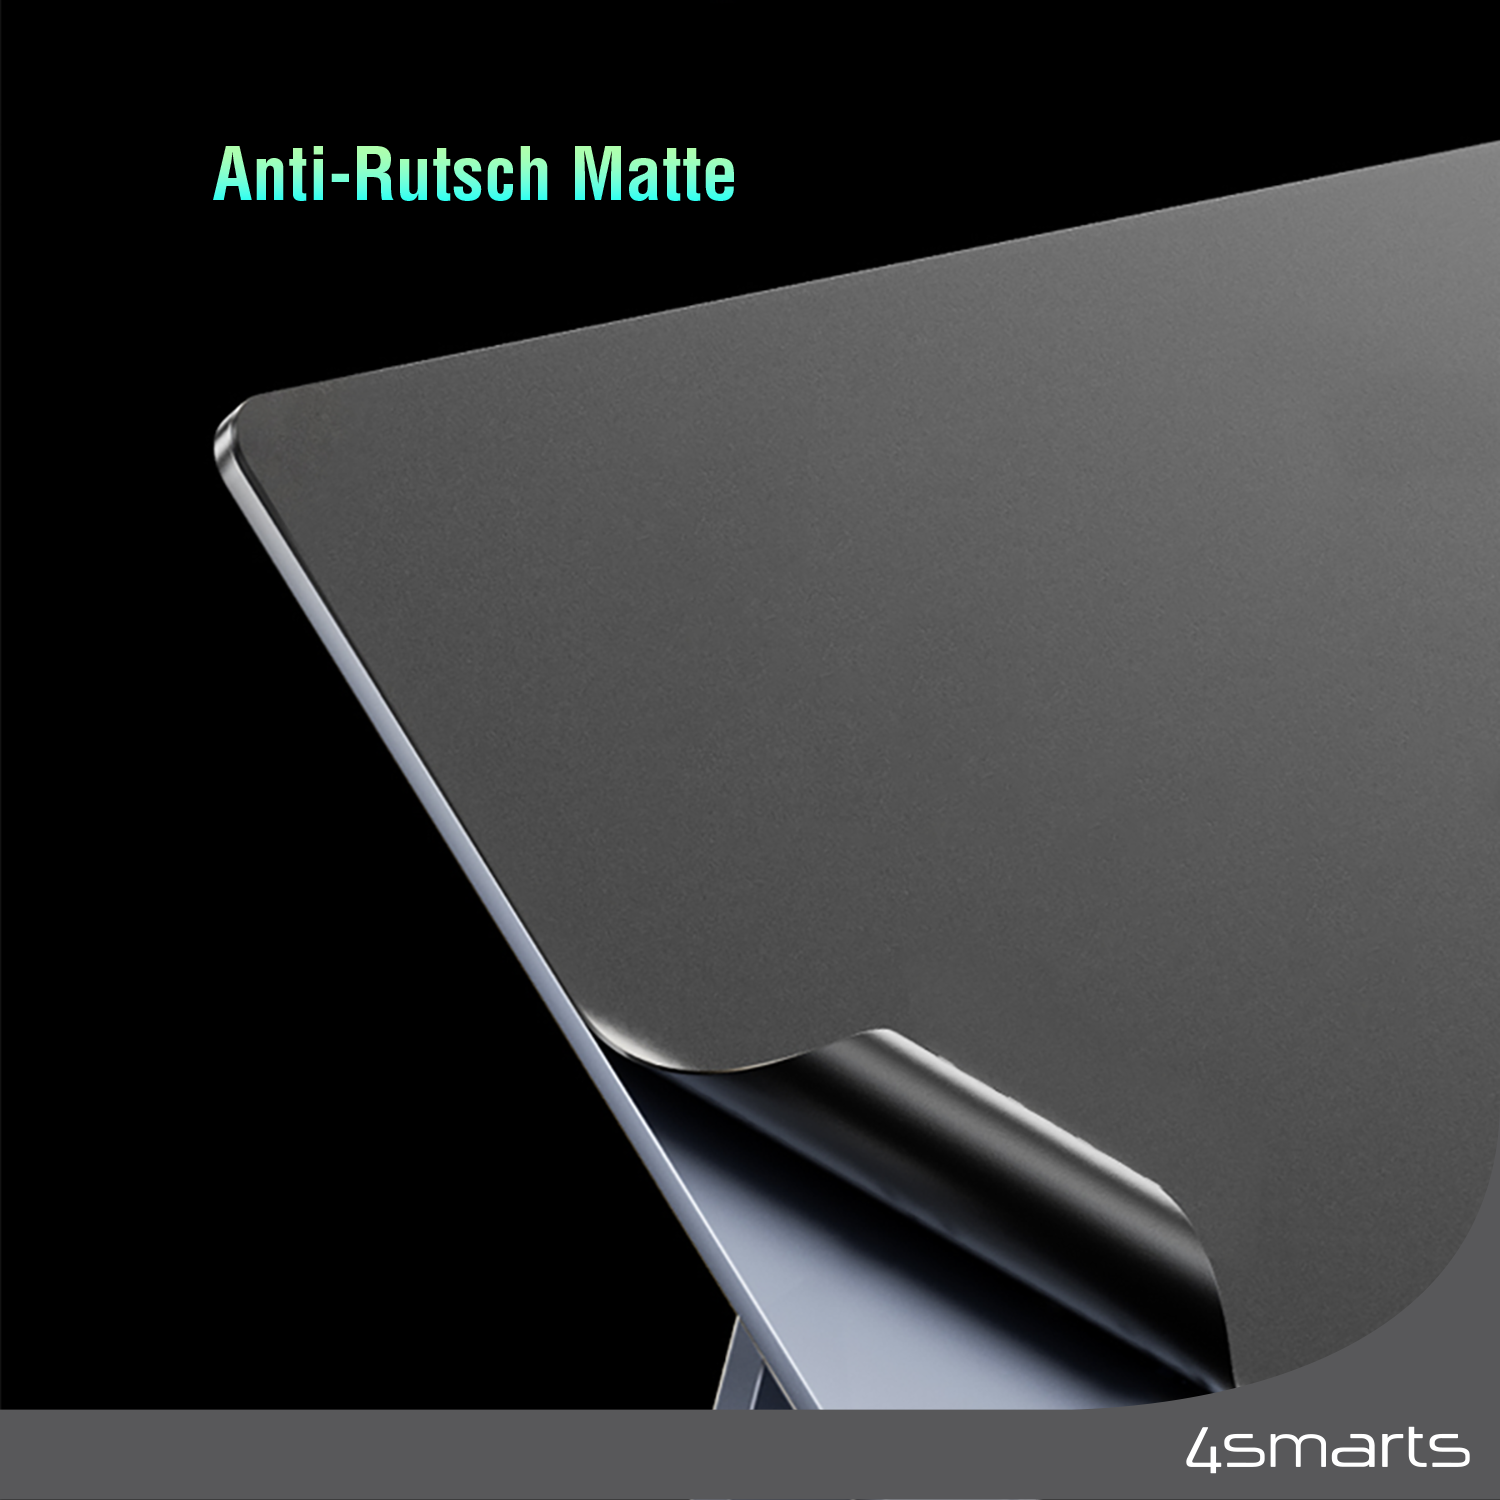 Die Anti-Rutsch-Beschichtung deines 4smarts Tablet Ständers sorgt dafür, dass dein Apple iPad Pro 12.9 sicher und stabil gehalten wird.